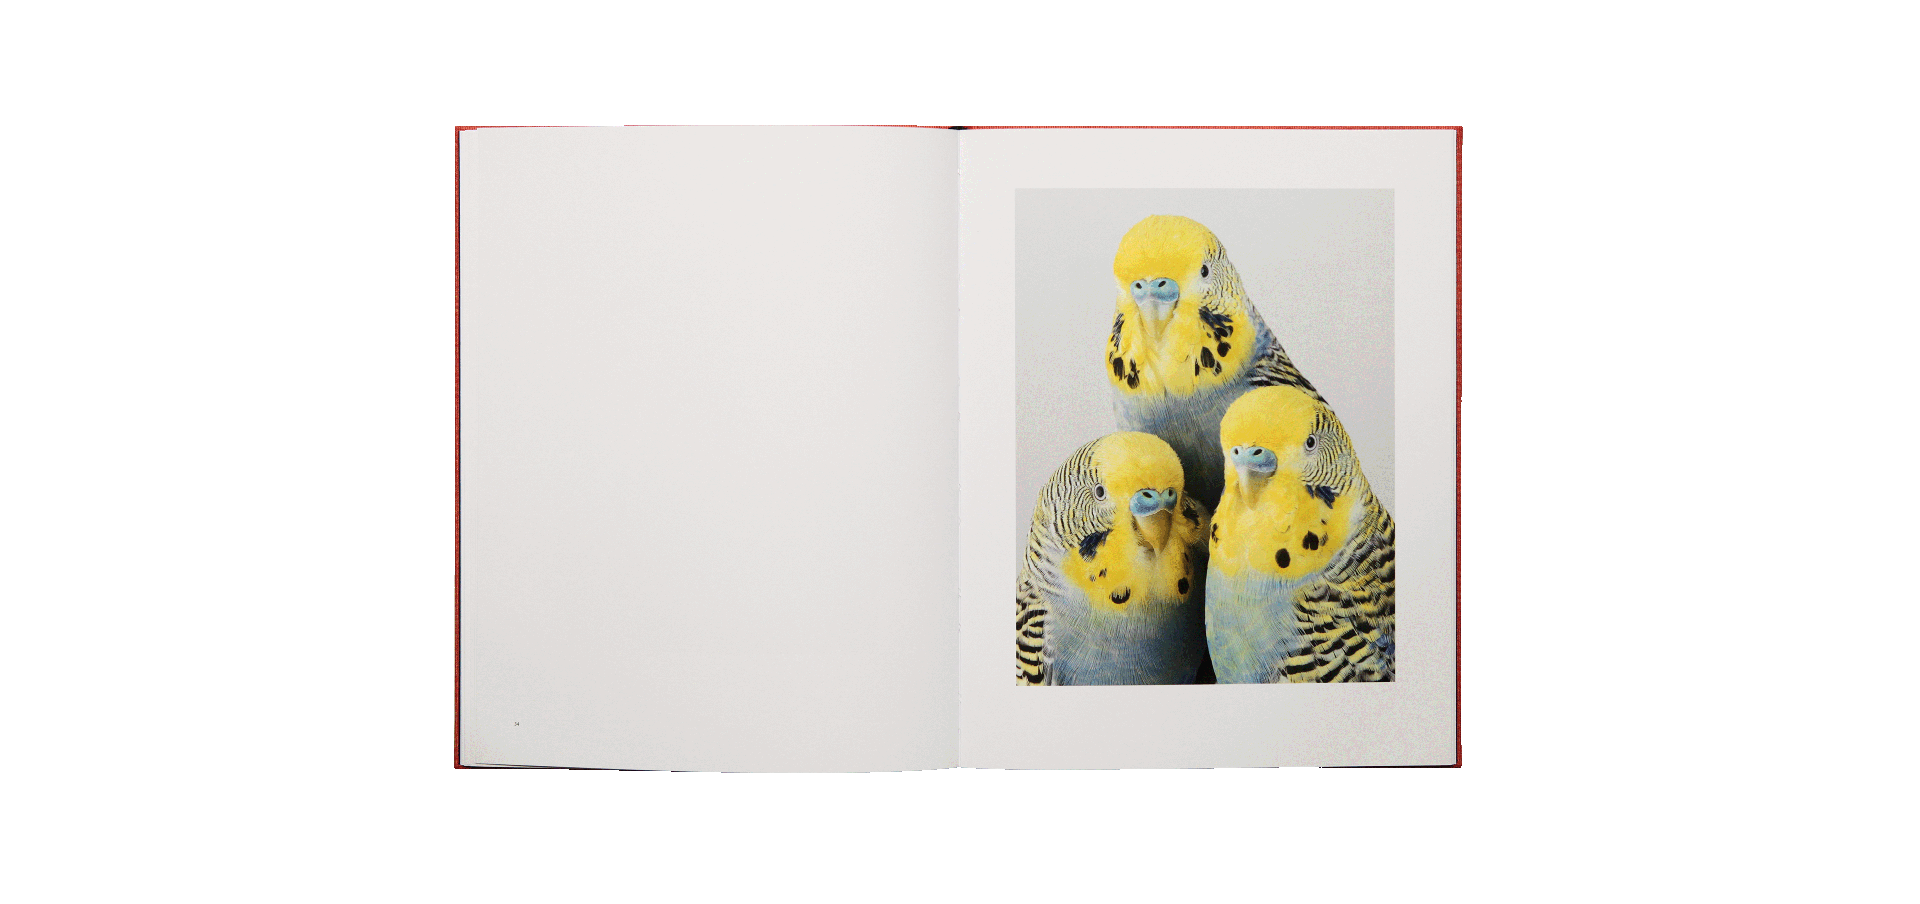 Des oiseaux - Leila Jeffreys - édition limitée